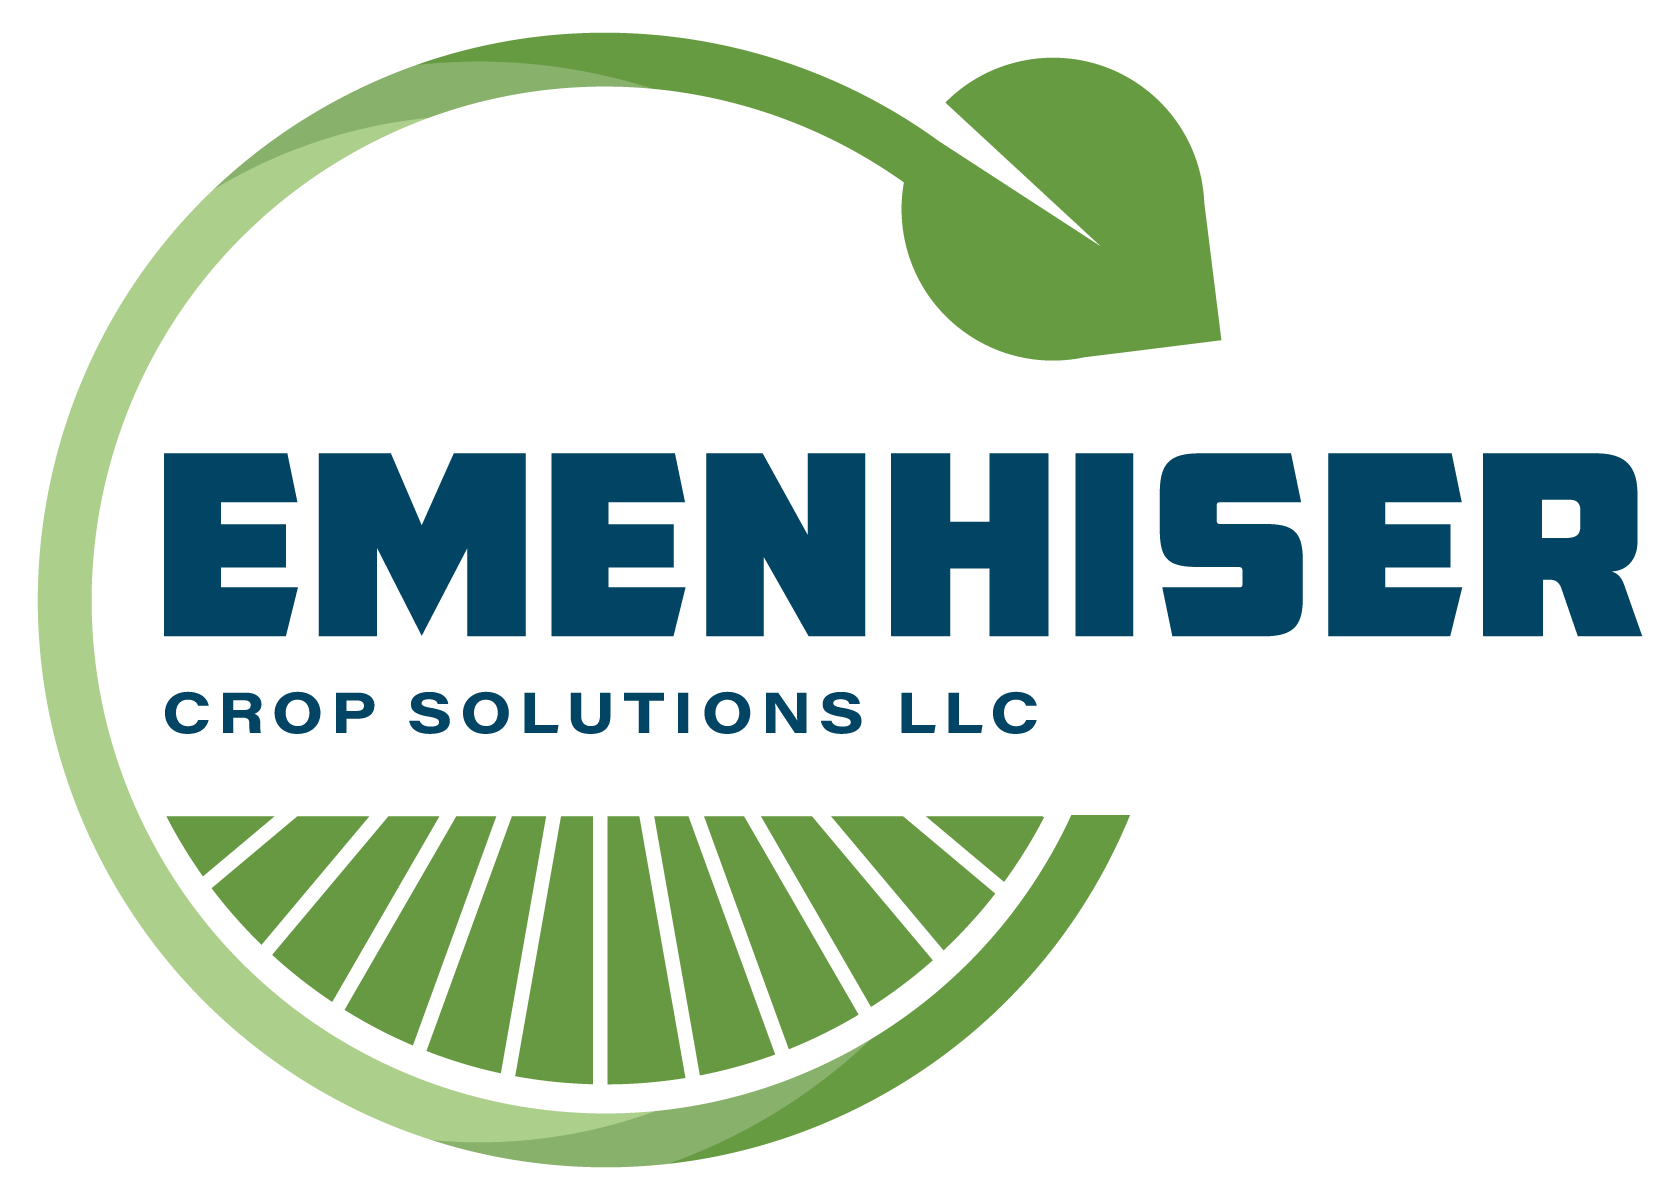 Emenhiser Crop Solutions